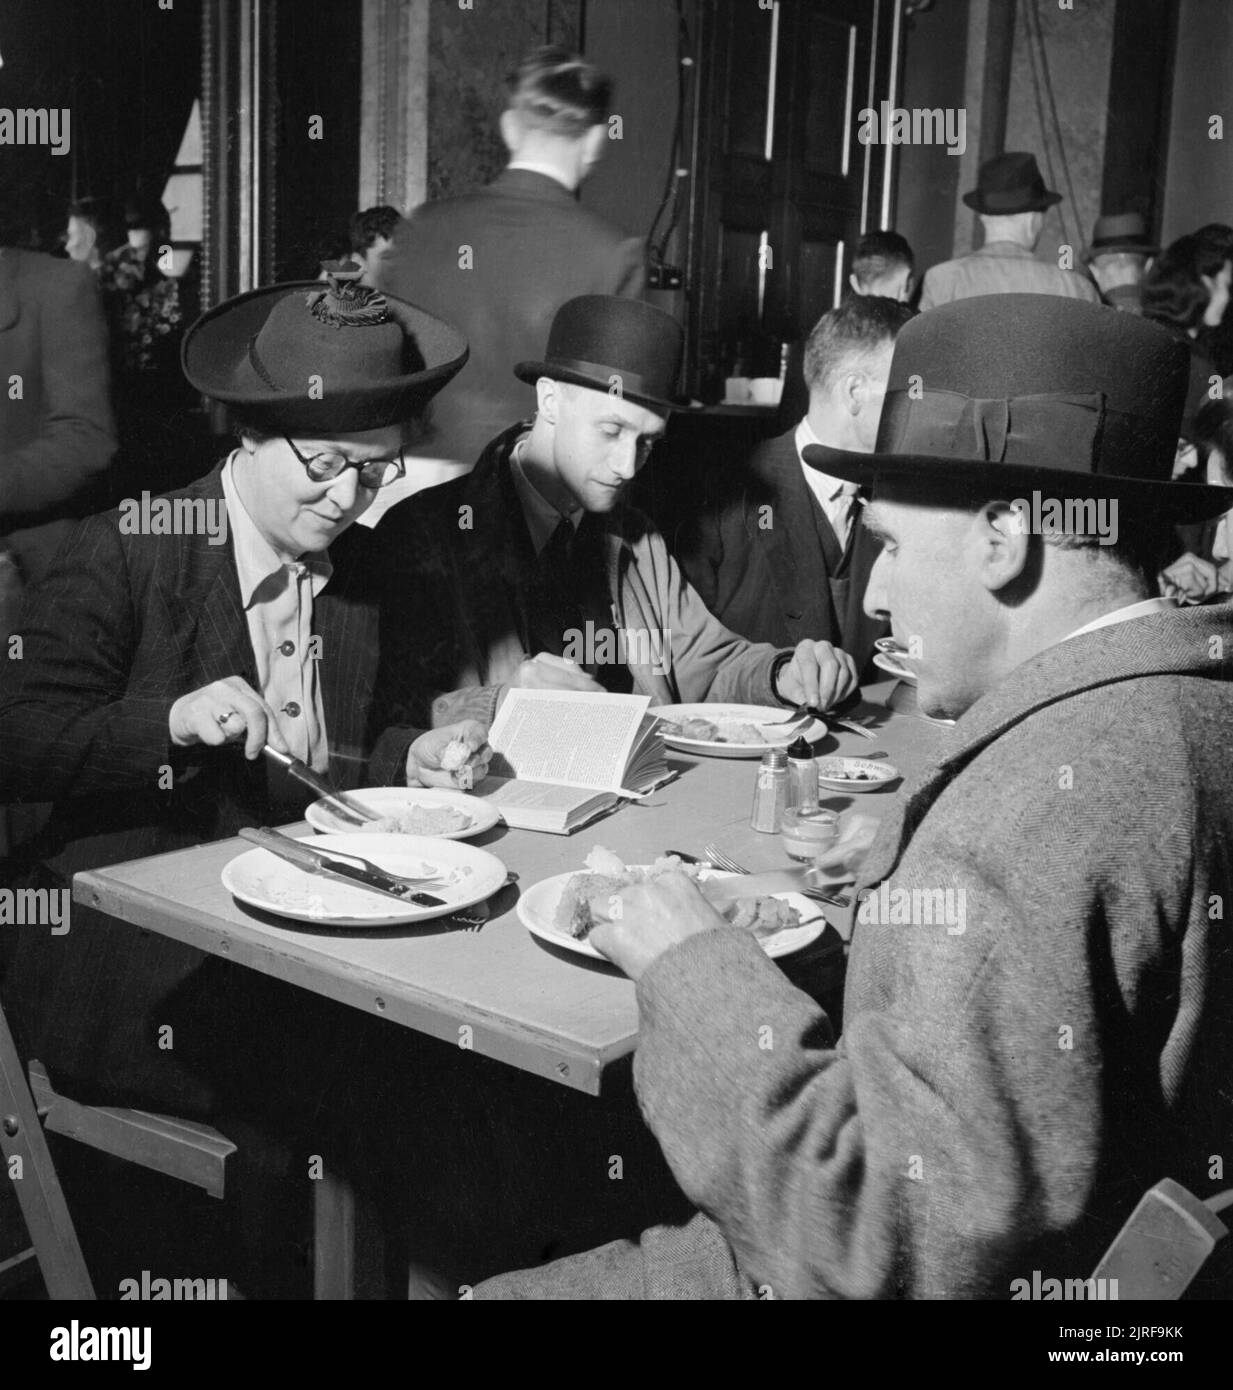 Les membres du public appréciant un repas au repas des londoniens à cantine Service de poissonnerie Hall, Londres, 12 octobre 1942. De nombreux différents types de personnes prenez un délicieux repas dans les Londoniens' Service repas à la cantine de poissonnerie Hall. Mme M Squires (à gauche) est un raccourci dactylo et son mari est dans la RAF. M. UN G Rosier (centre) est greffier en chef dans une entreprise de fabrication d'un coffre-fort pour le gouvernement. Monsieur W S Turner (à droite, l'appareil photo le plus proche) est un 62 ans greffier qui a servi dans la Brigade de carabiniers au cours de la Première Guerre mondiale. Banque D'Images